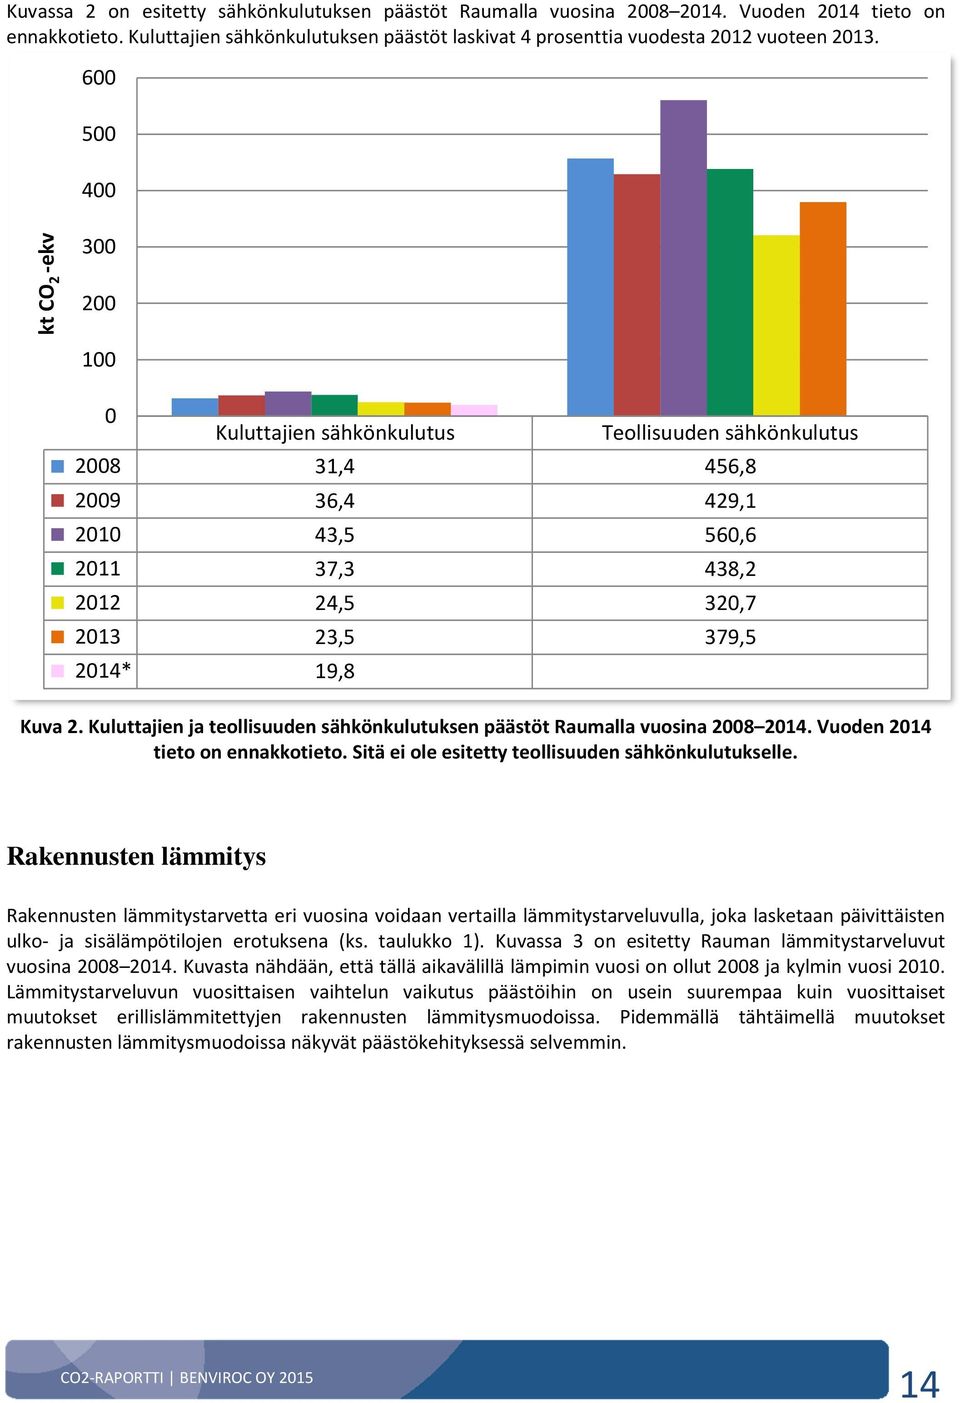 Kuva 2. Kuluttajien ja teollisuuden sähkönkulutuksen päästöt Raumalla vuosina 2008 2014. Vuoden 2014 tieto on ennakkotieto. Sitä ei ole esitetty teollisuuden sähkönkulutukselle.